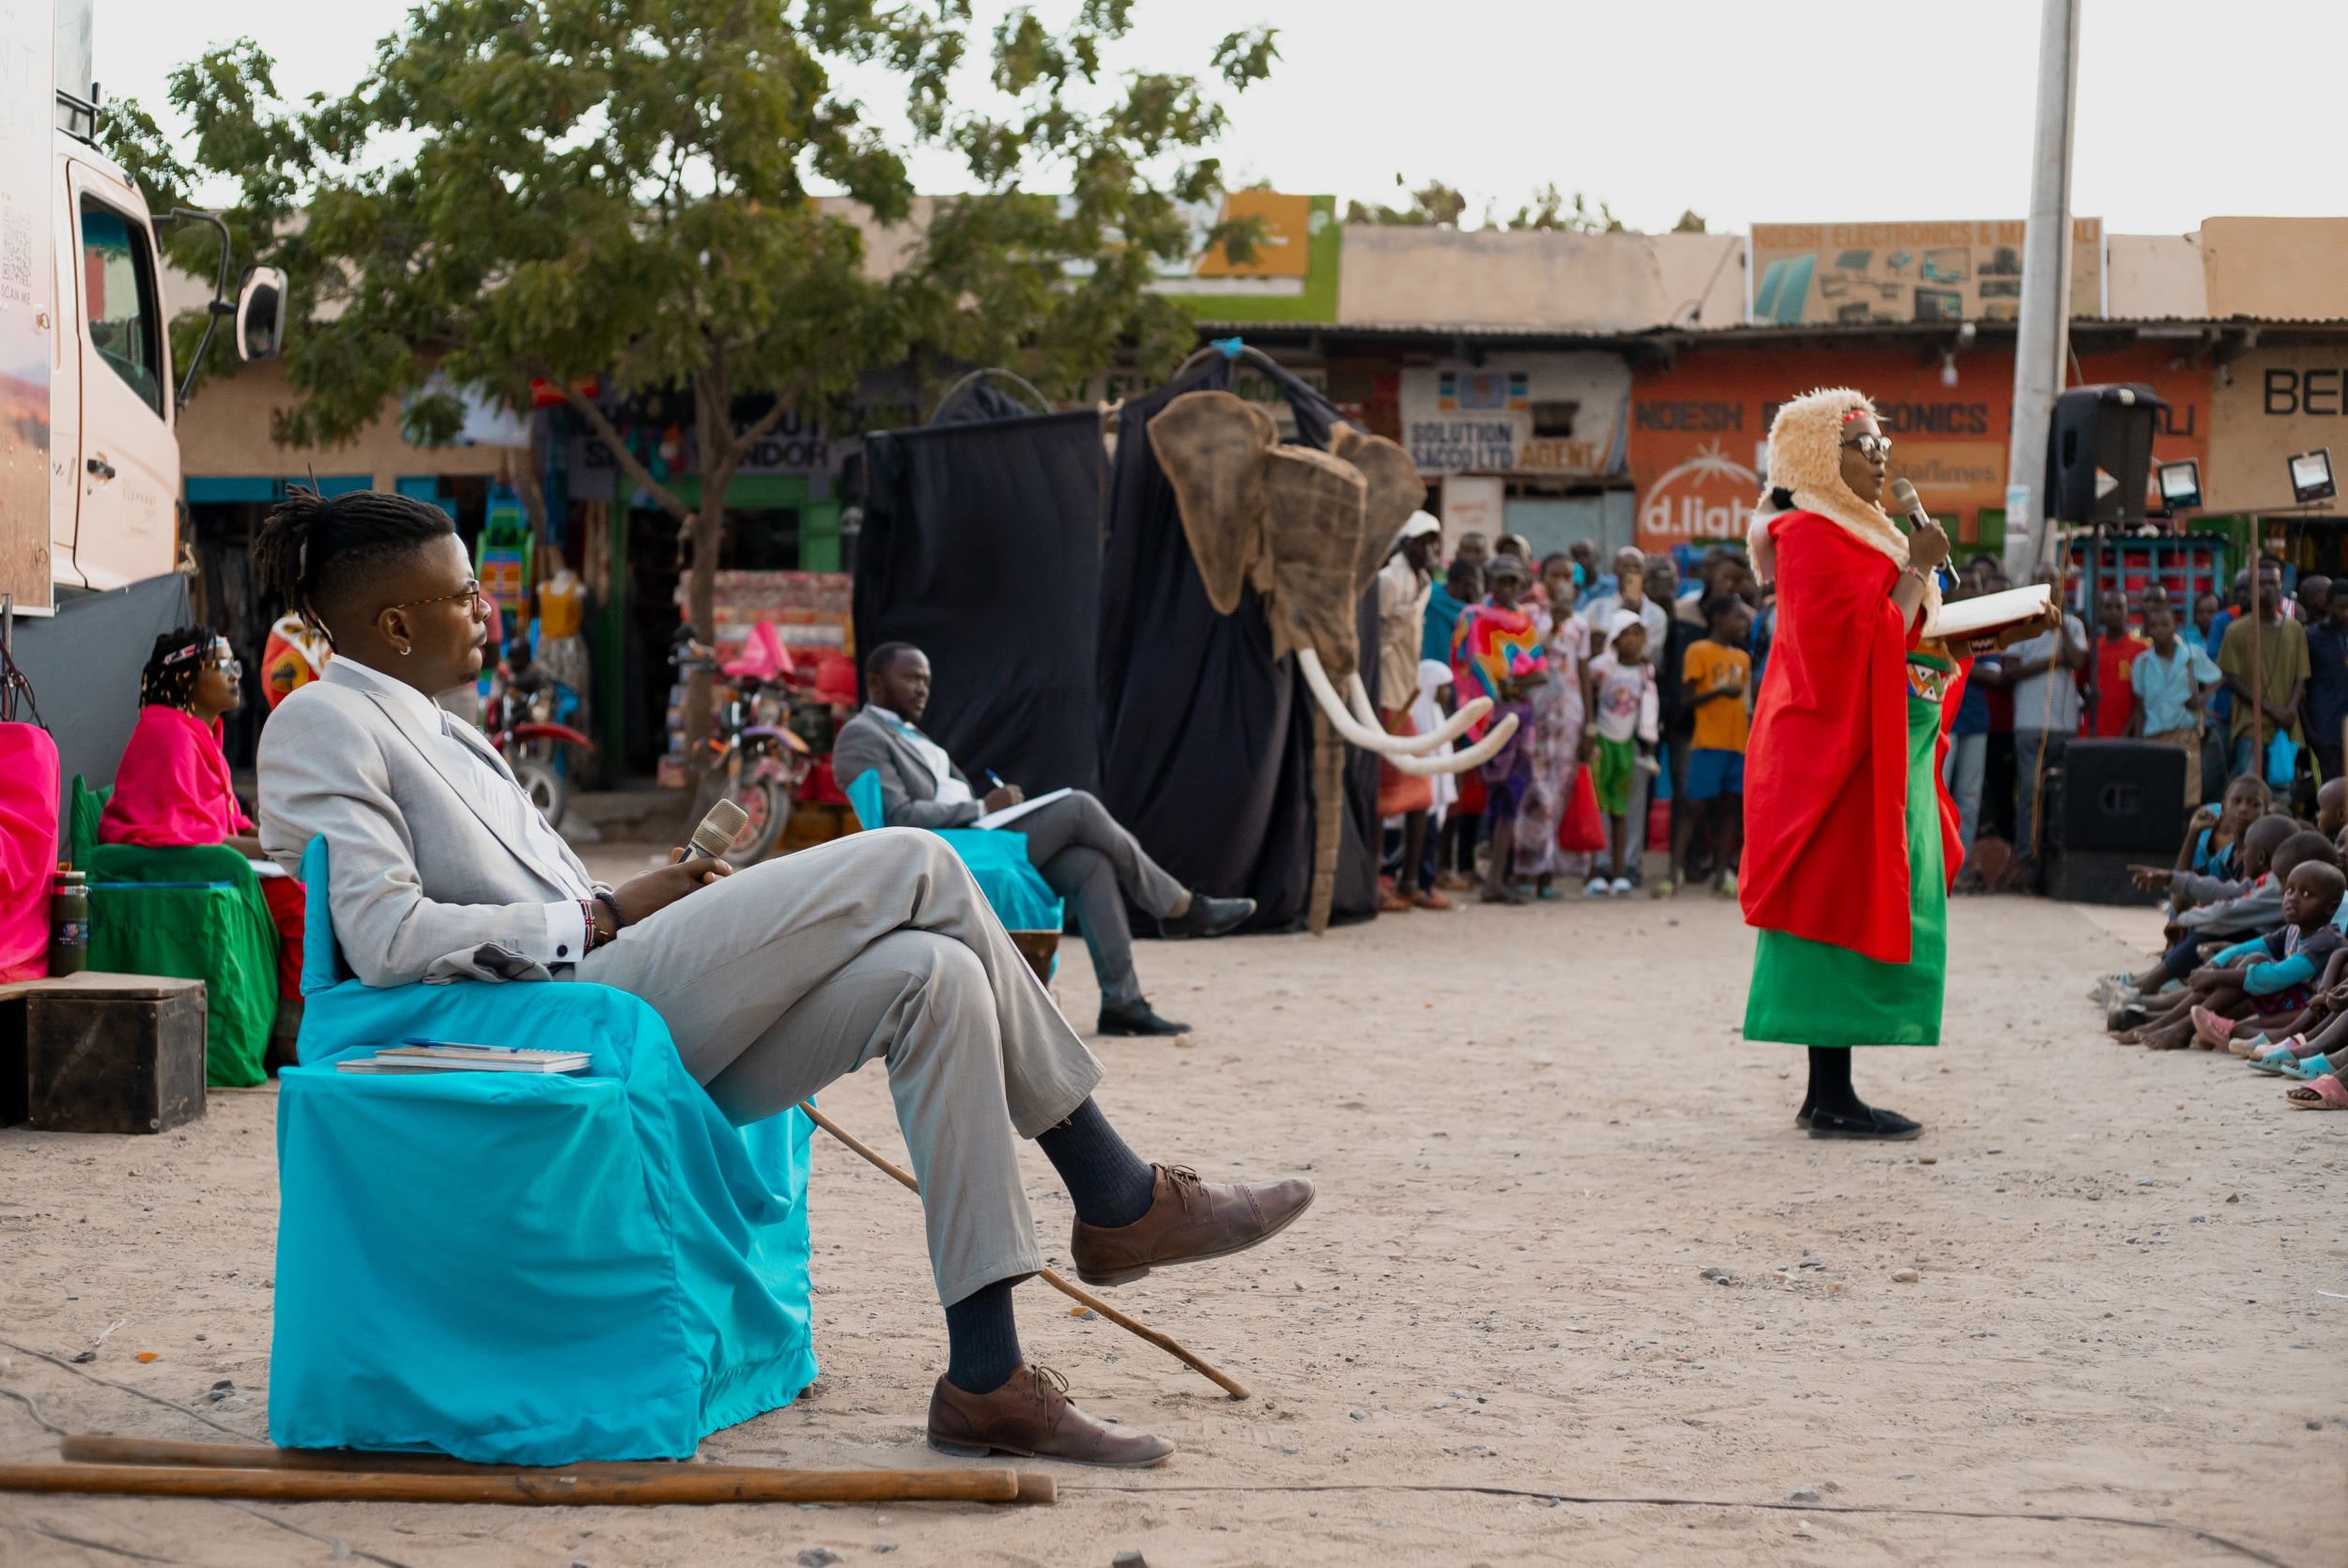 Theatre perfomance in Archers Post, Samburu